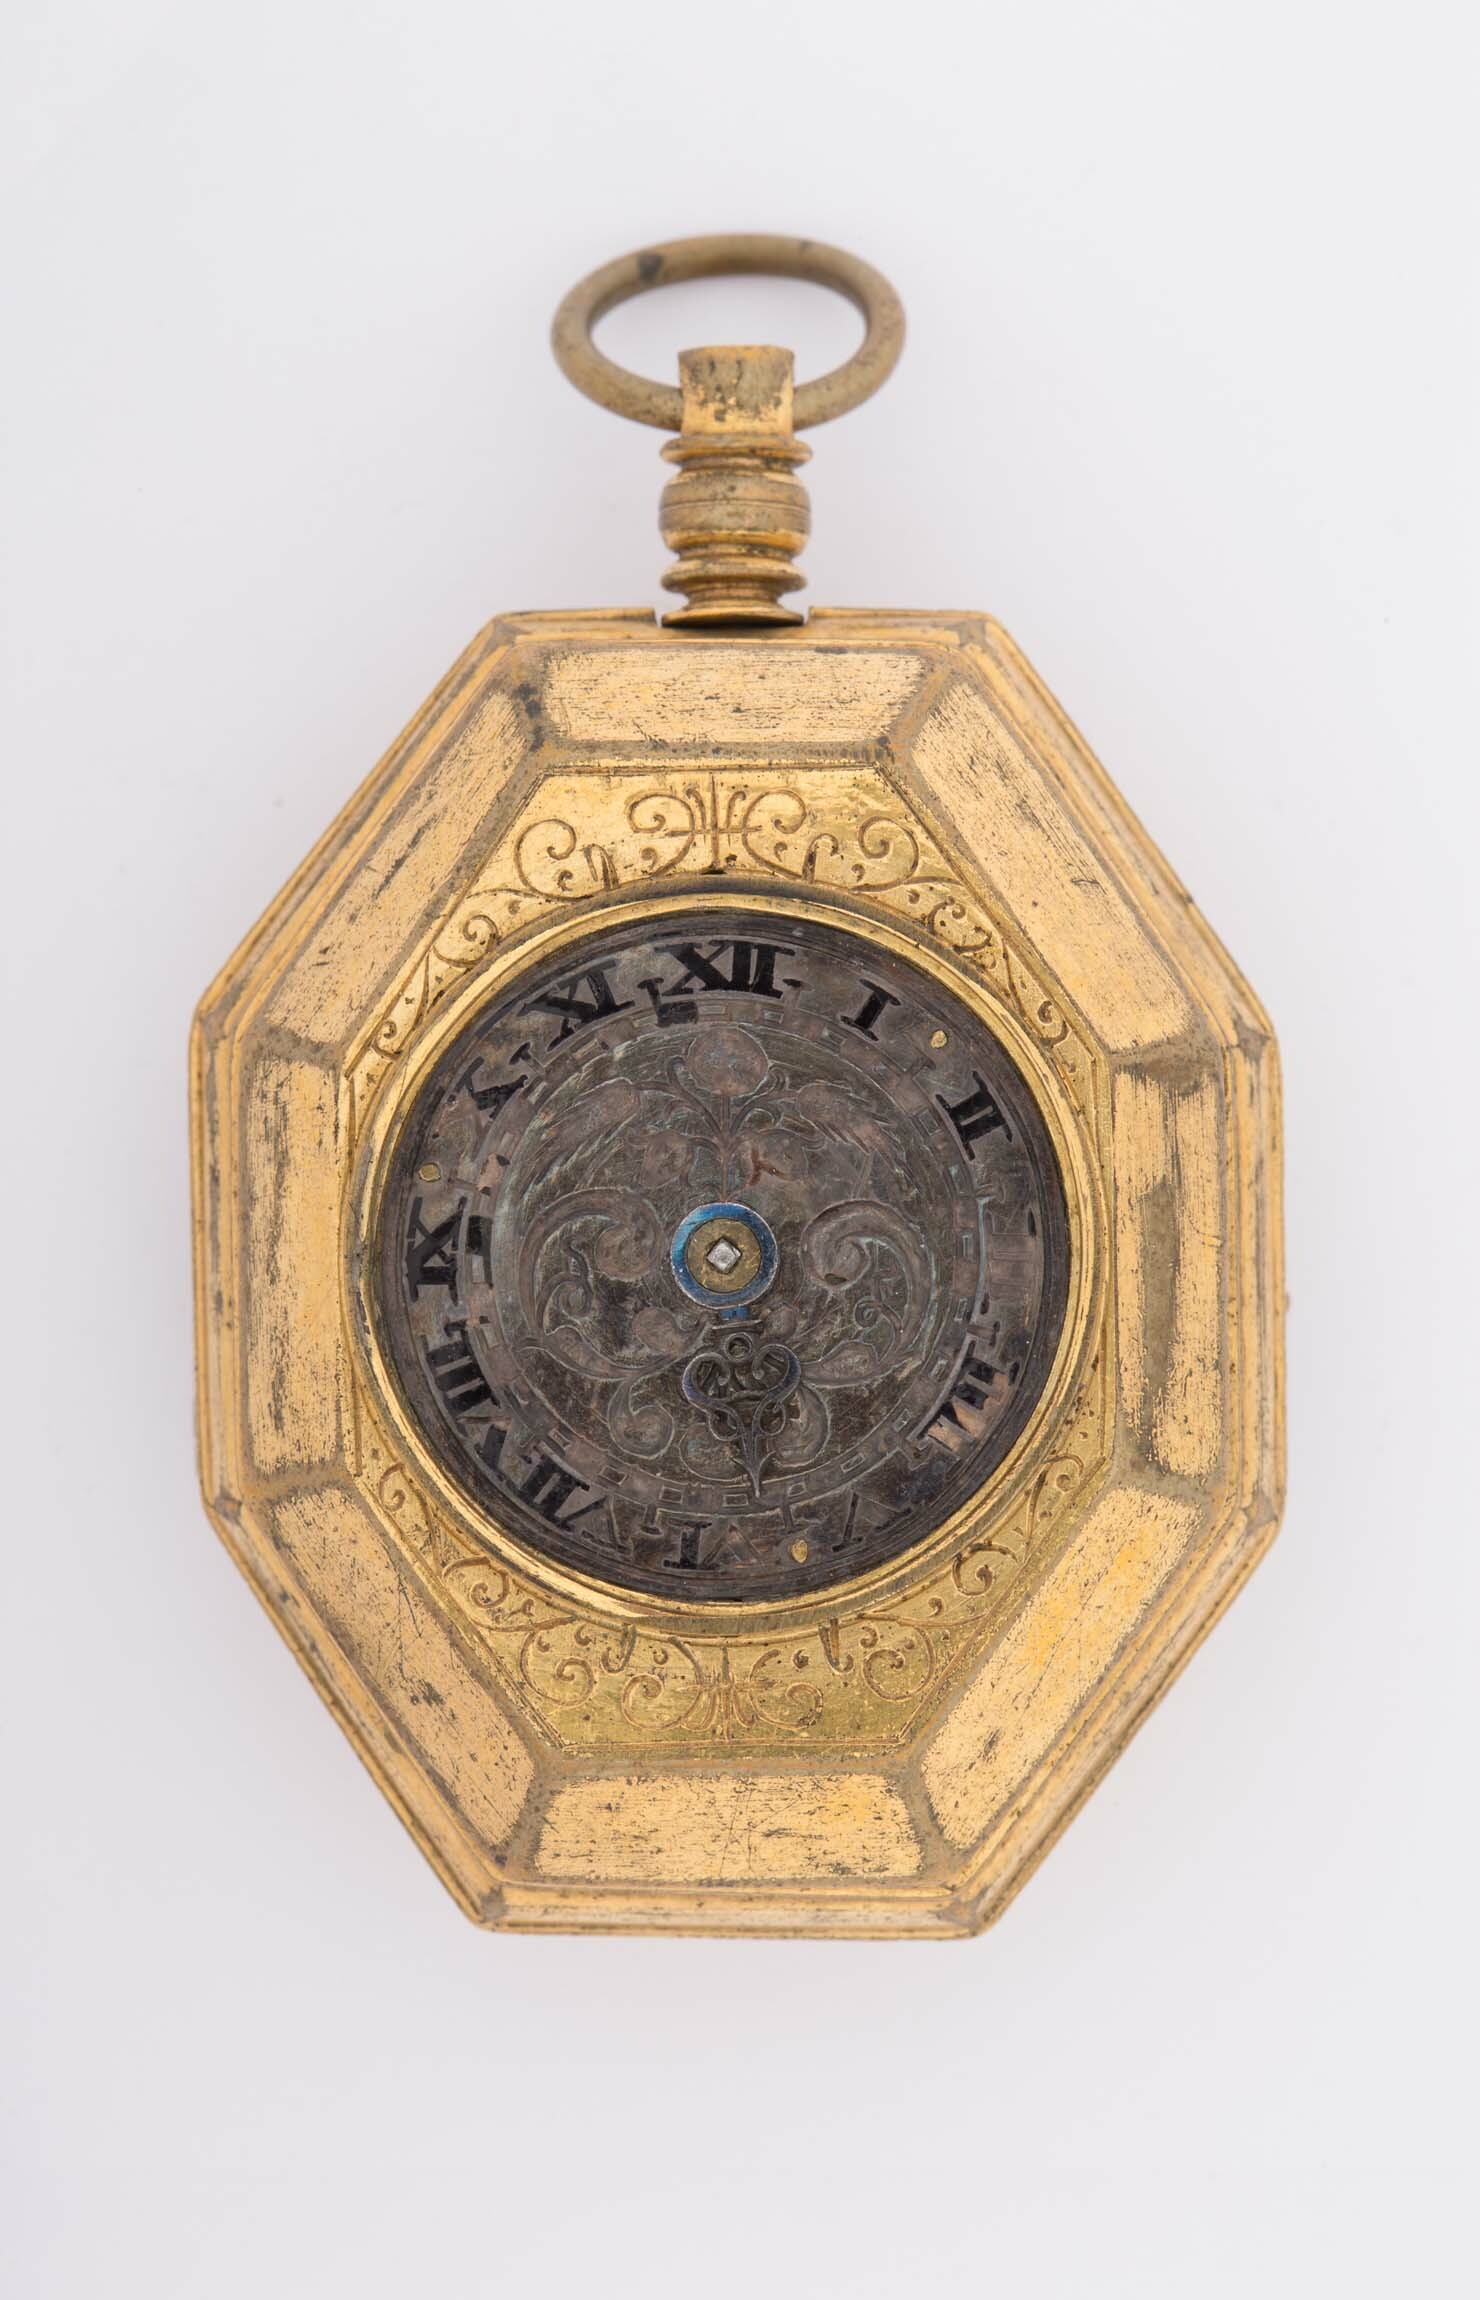 Halsuhr mit Schlagwerk, um 1600 (Deutsches Uhrenmuseum CC BY-SA)